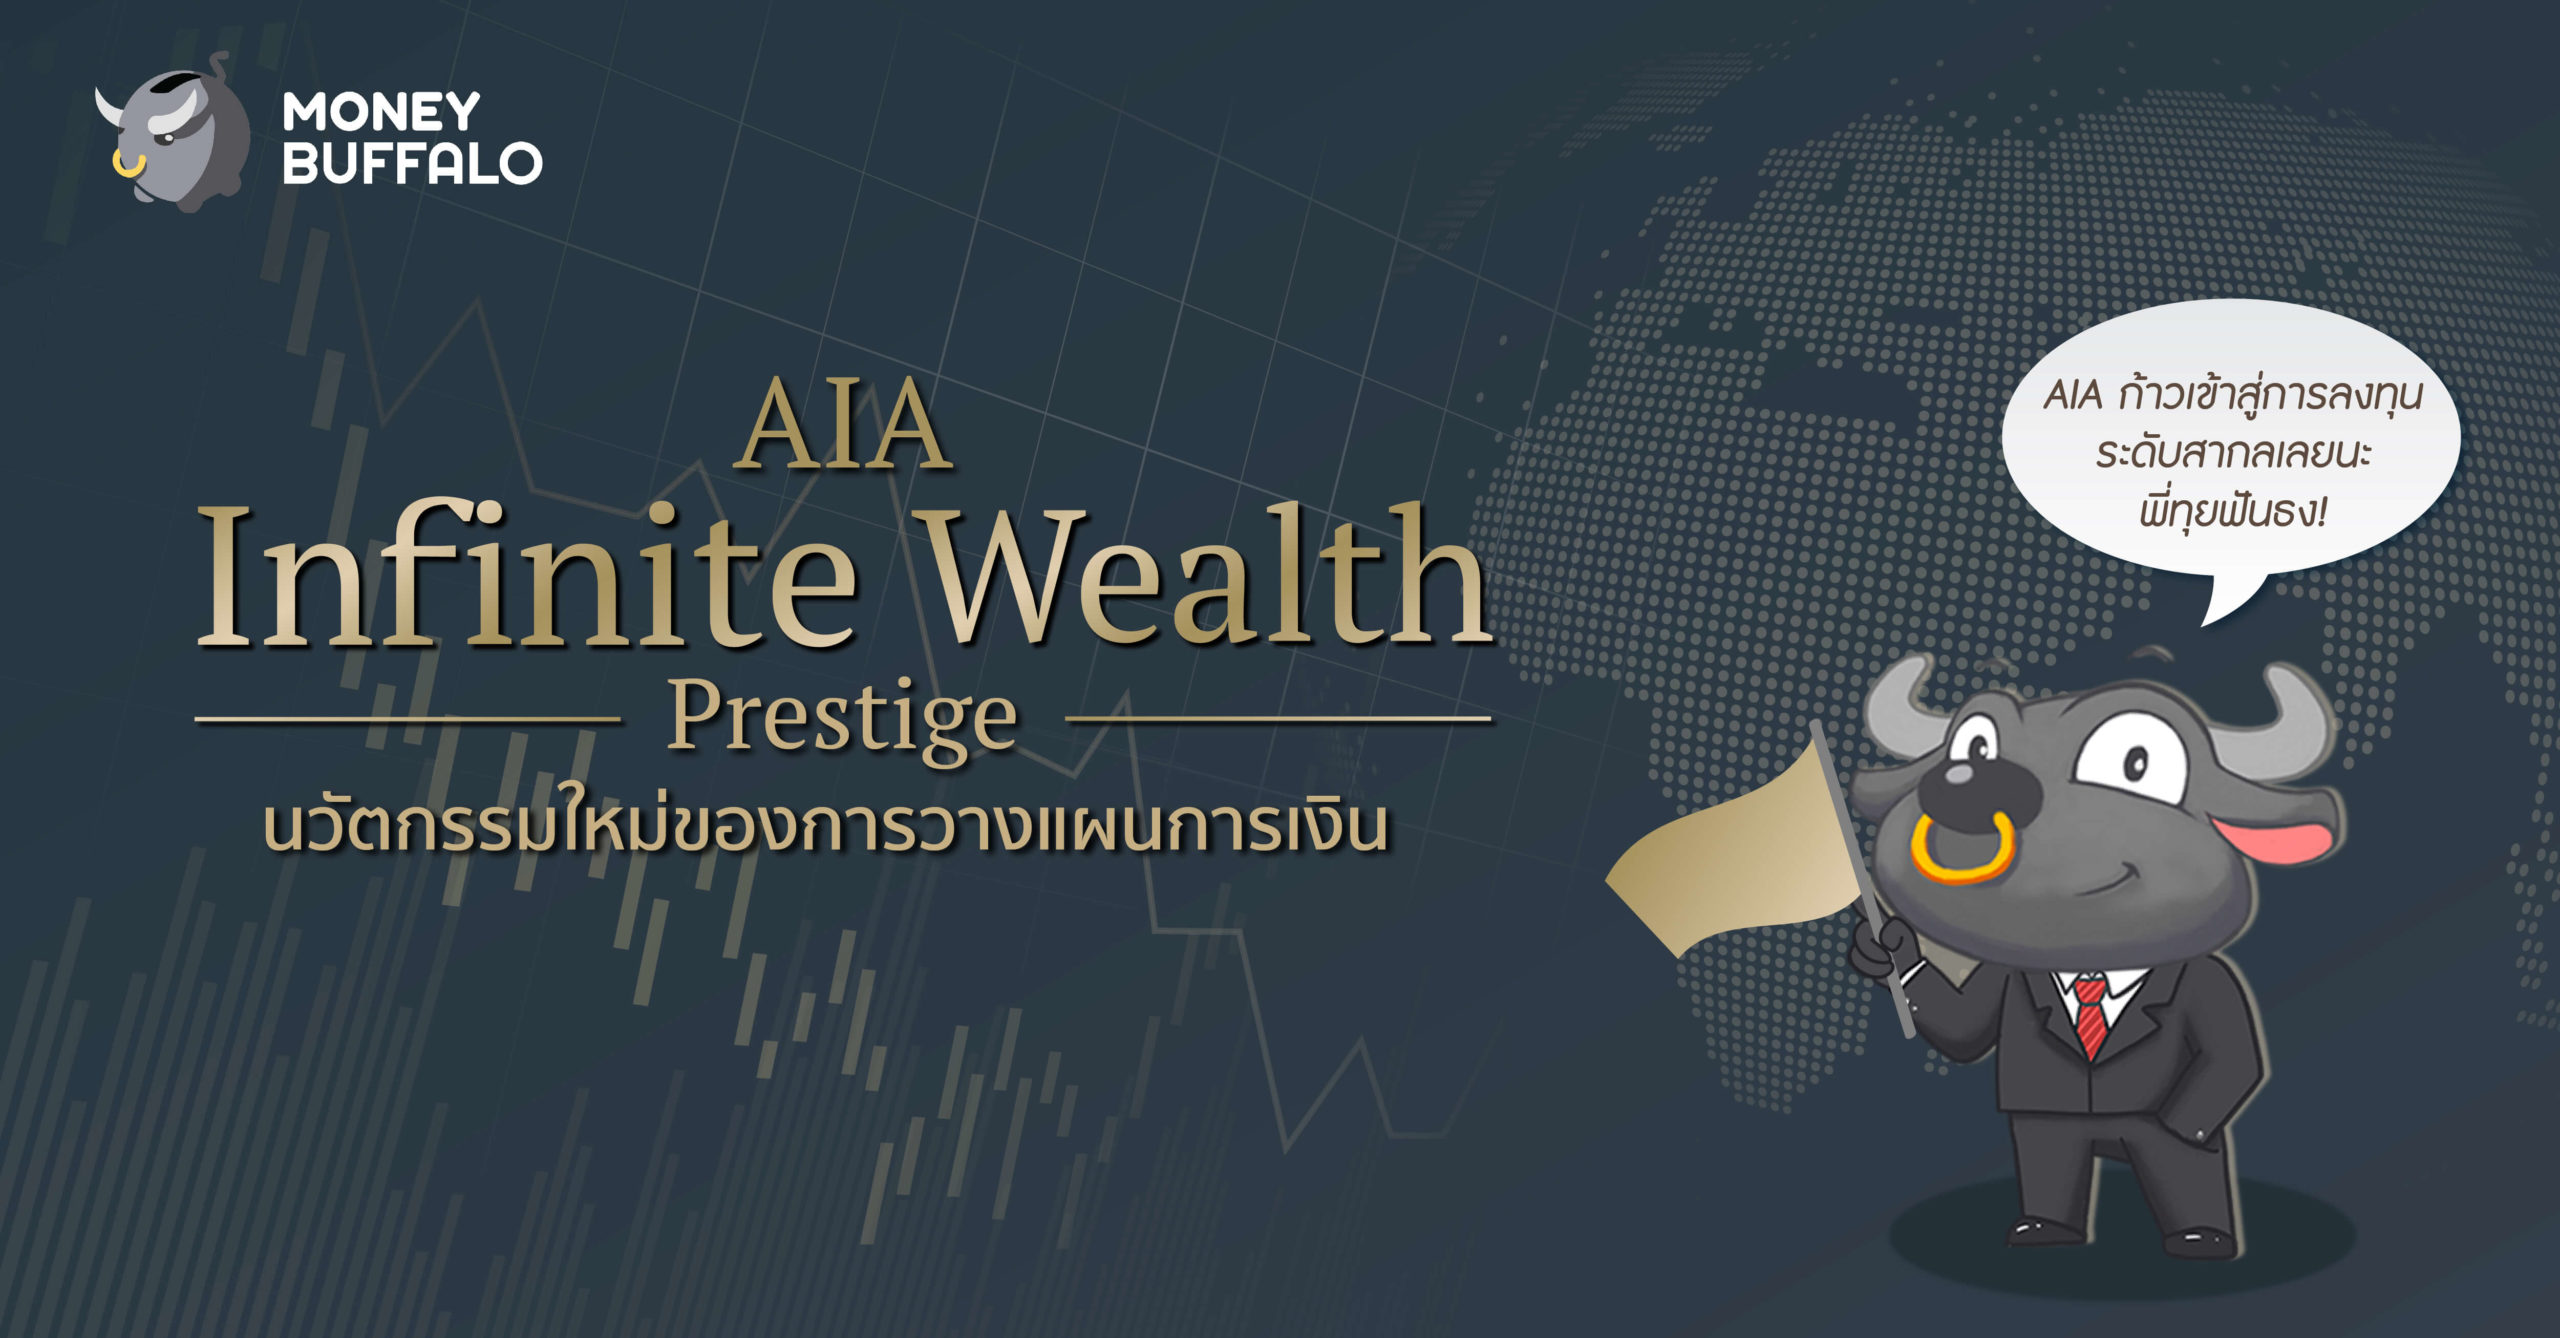 AIA Infinite Wealth Prestige